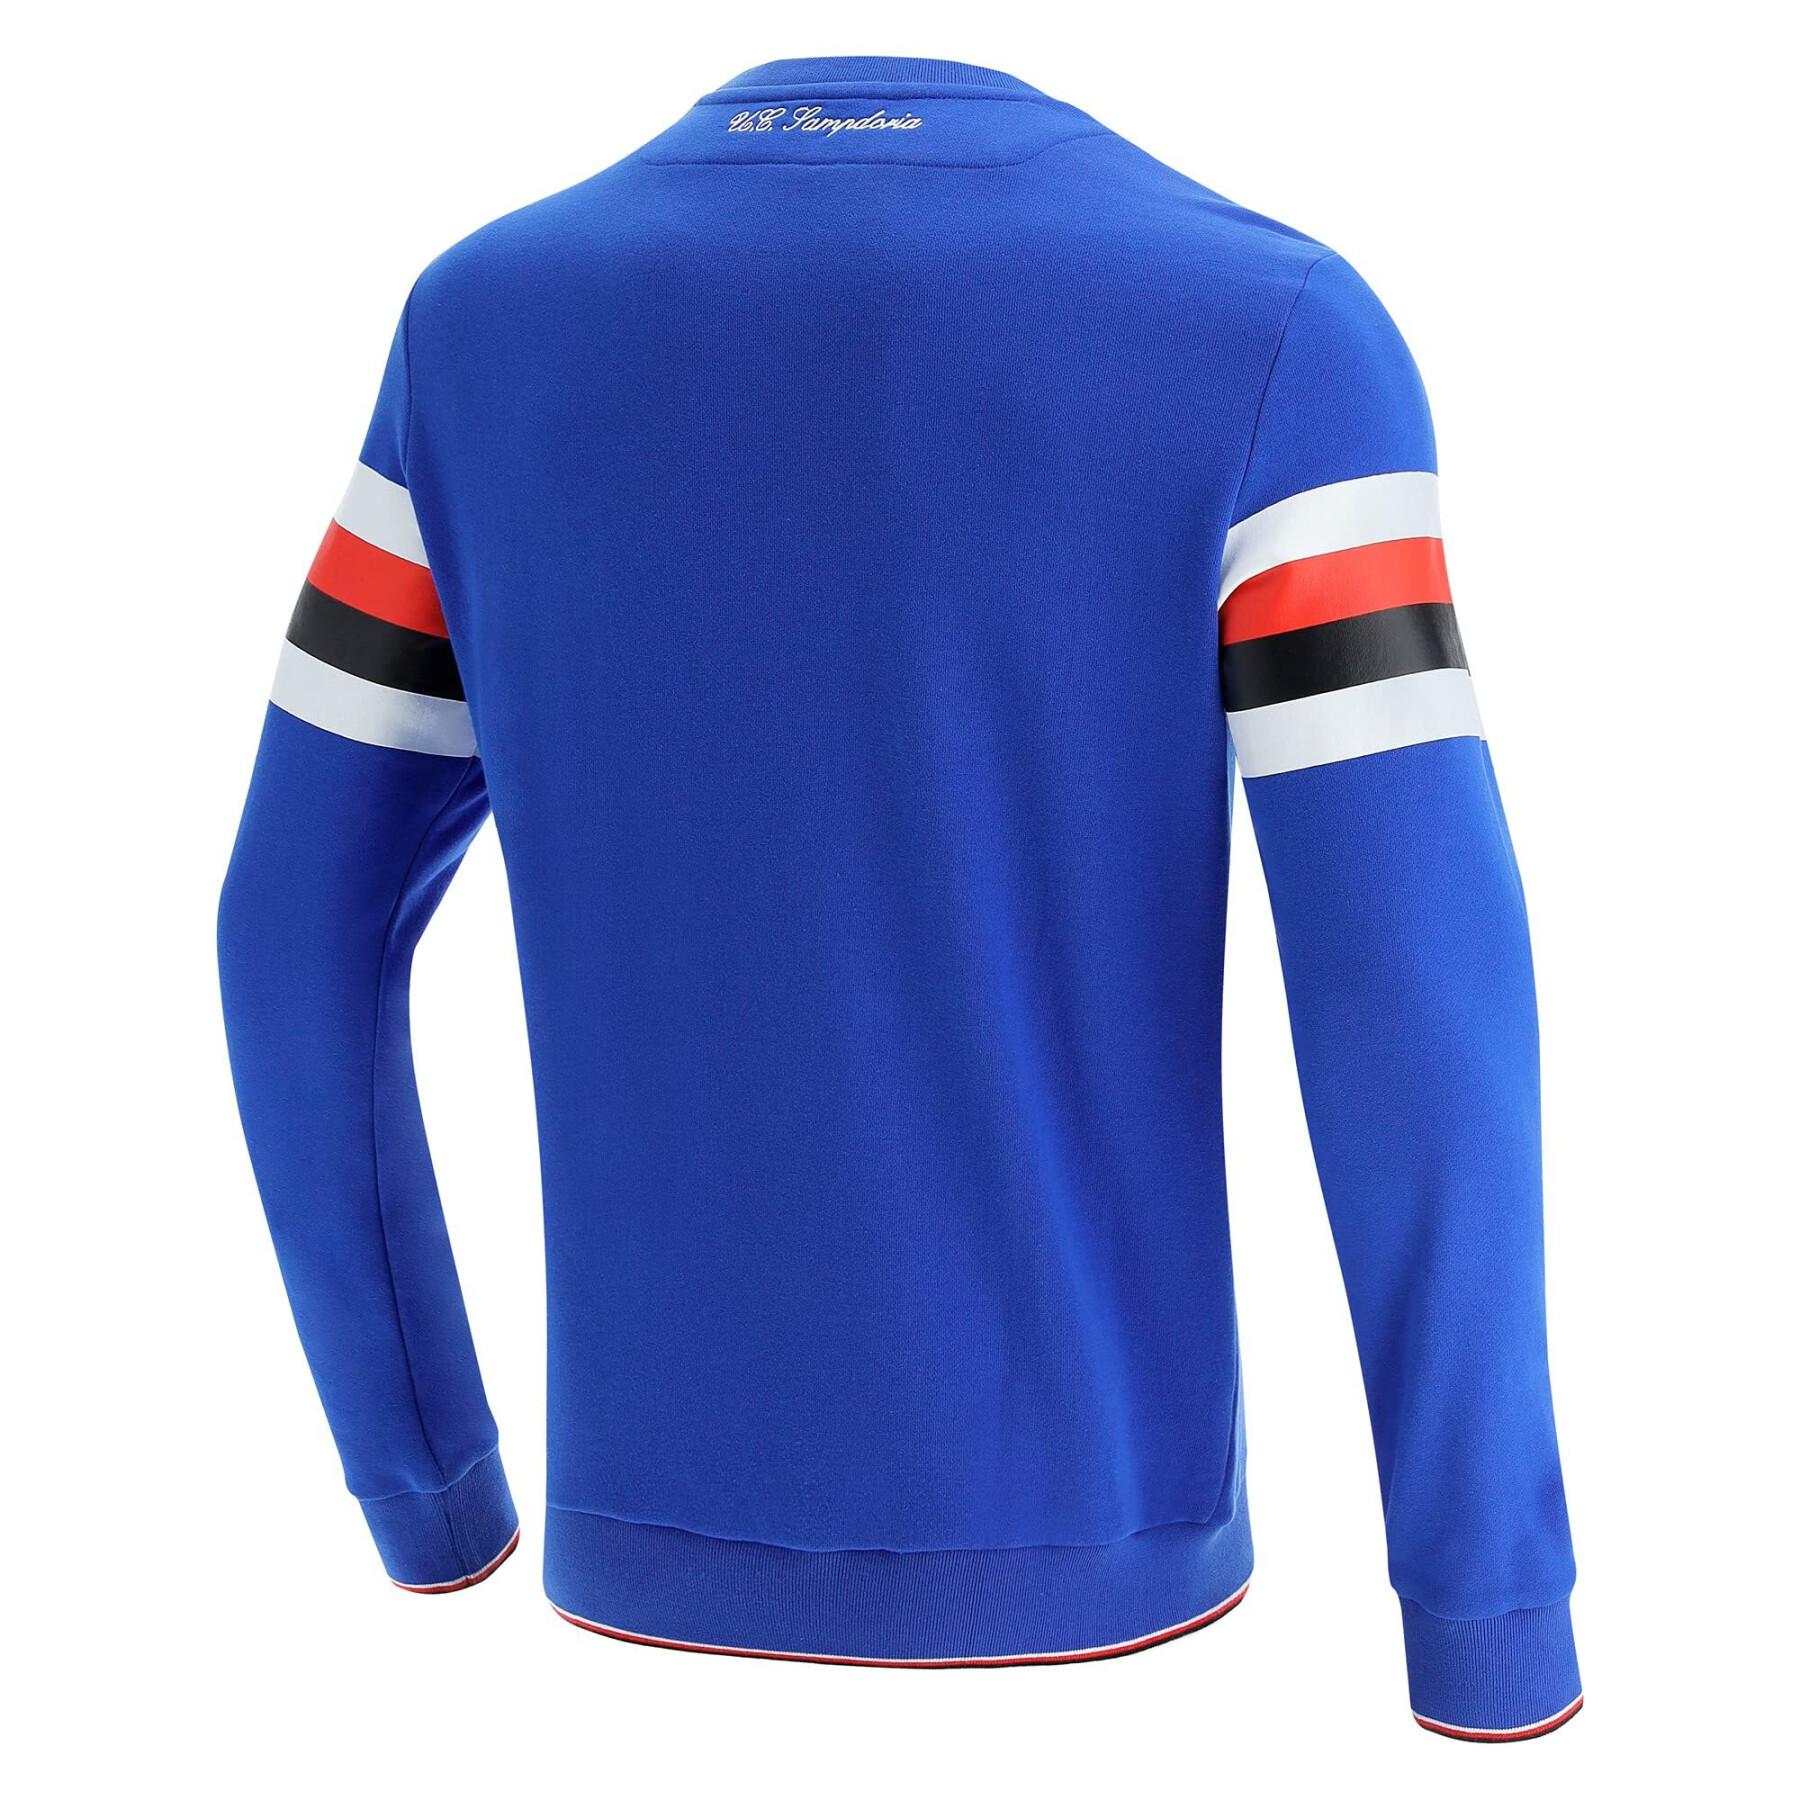 Round neck sweatshirt UC Sampdoria 2021/22